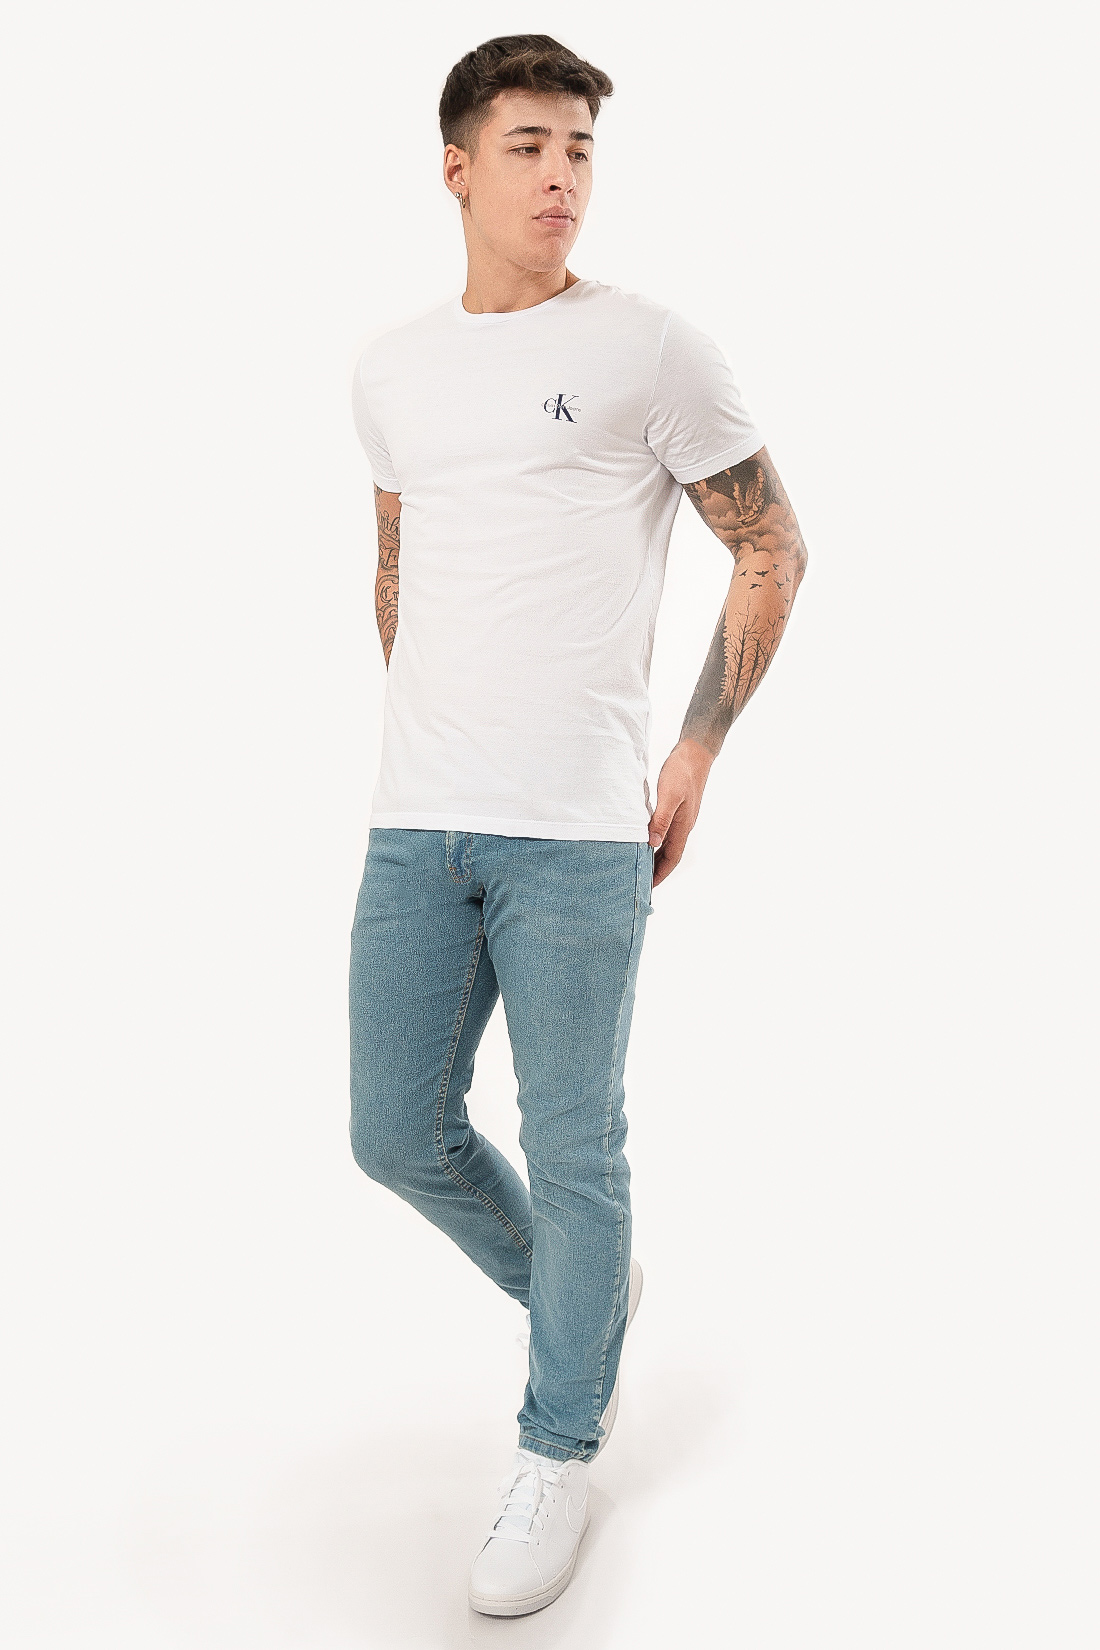 Camiseta Mc Calvin Klein Jeans Logo Peito